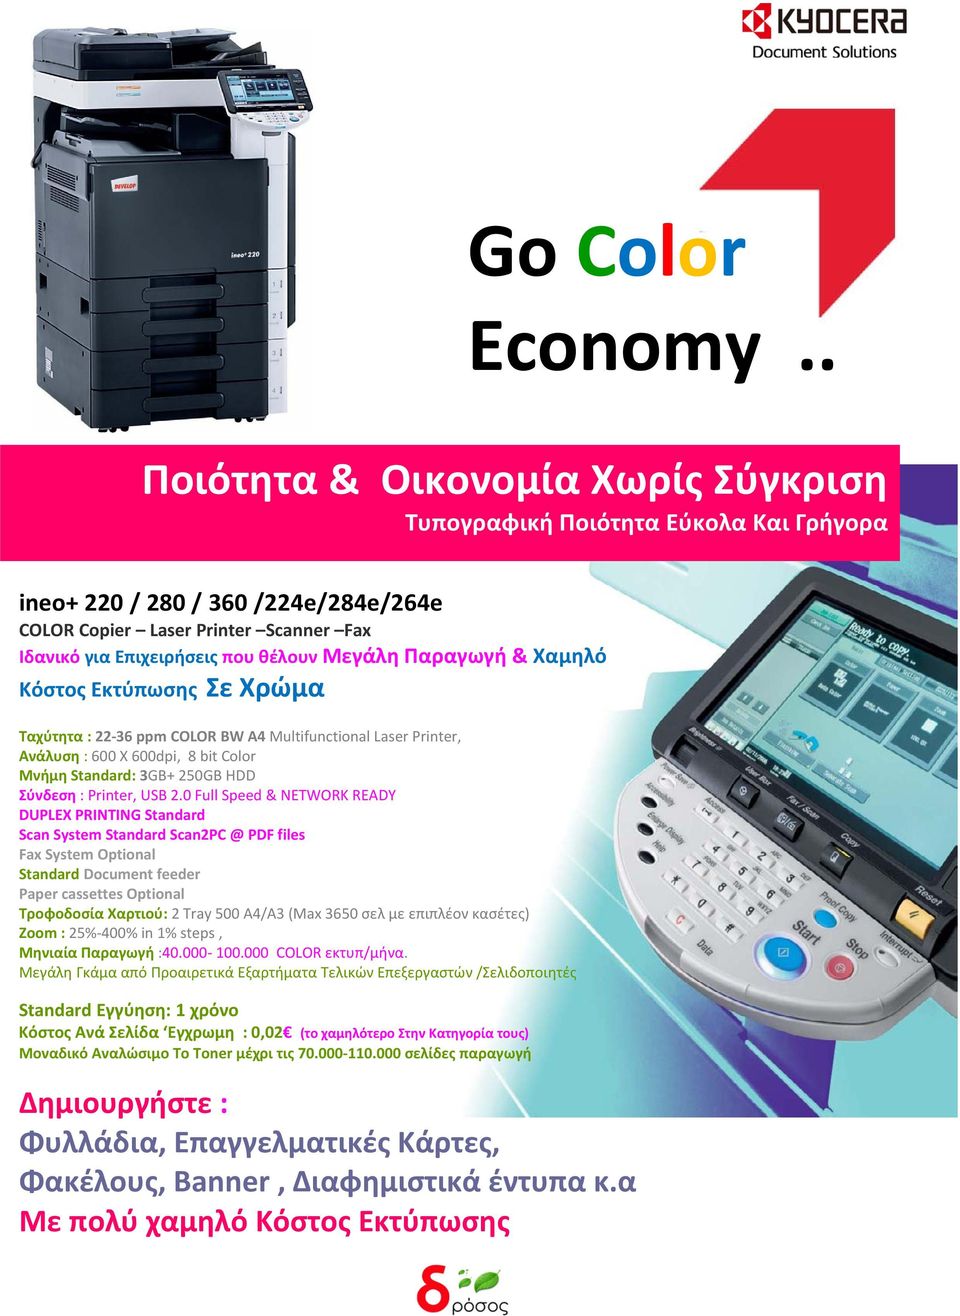 Παραγωγή & Χαμηλό Κόστος Εκτύπωσης Σε Χρώμα Ταχύτητα : 22-36 ppm COLOR BW A4 Multifunctional Laser Printer, Ανάλυση : 600 X 600dpi, 8 bit Color Μνήμη Standard: 3GB+ 250GB HDD Σύνδεση : Printer, USB 2.